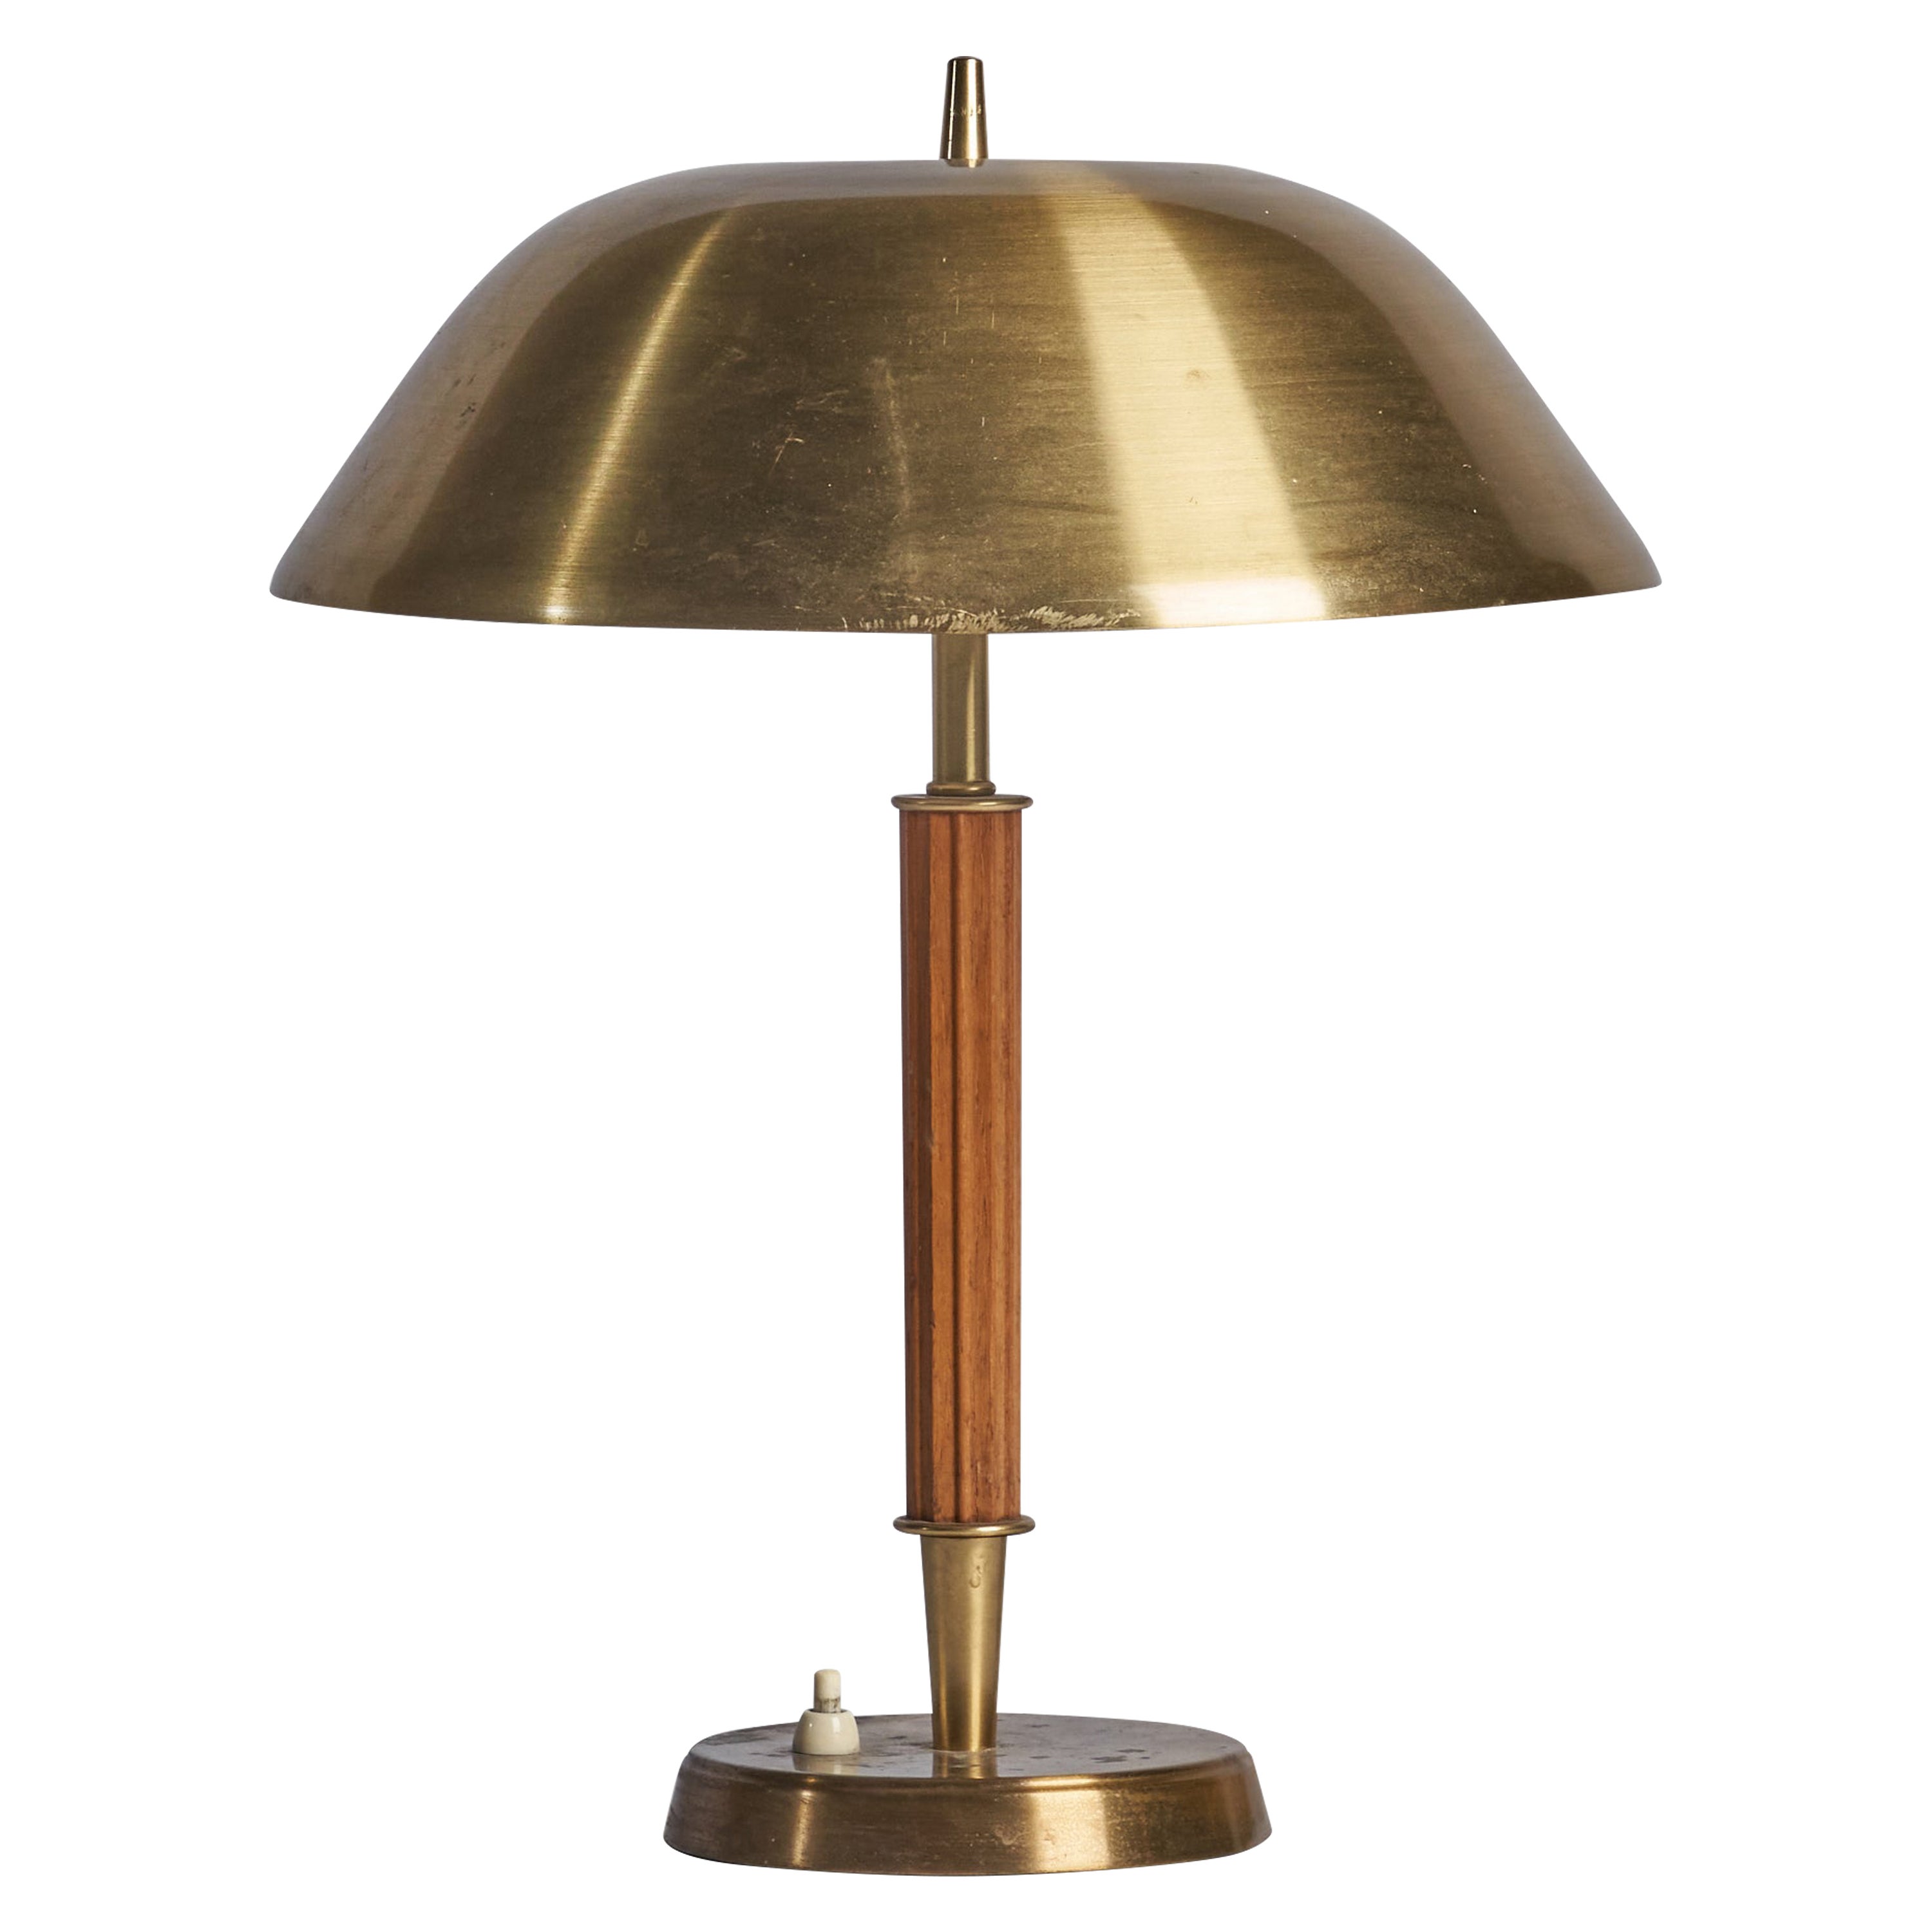 Falkenbergs Belysning, Table Lamp, Brass, Oak, Sweden, 1940s